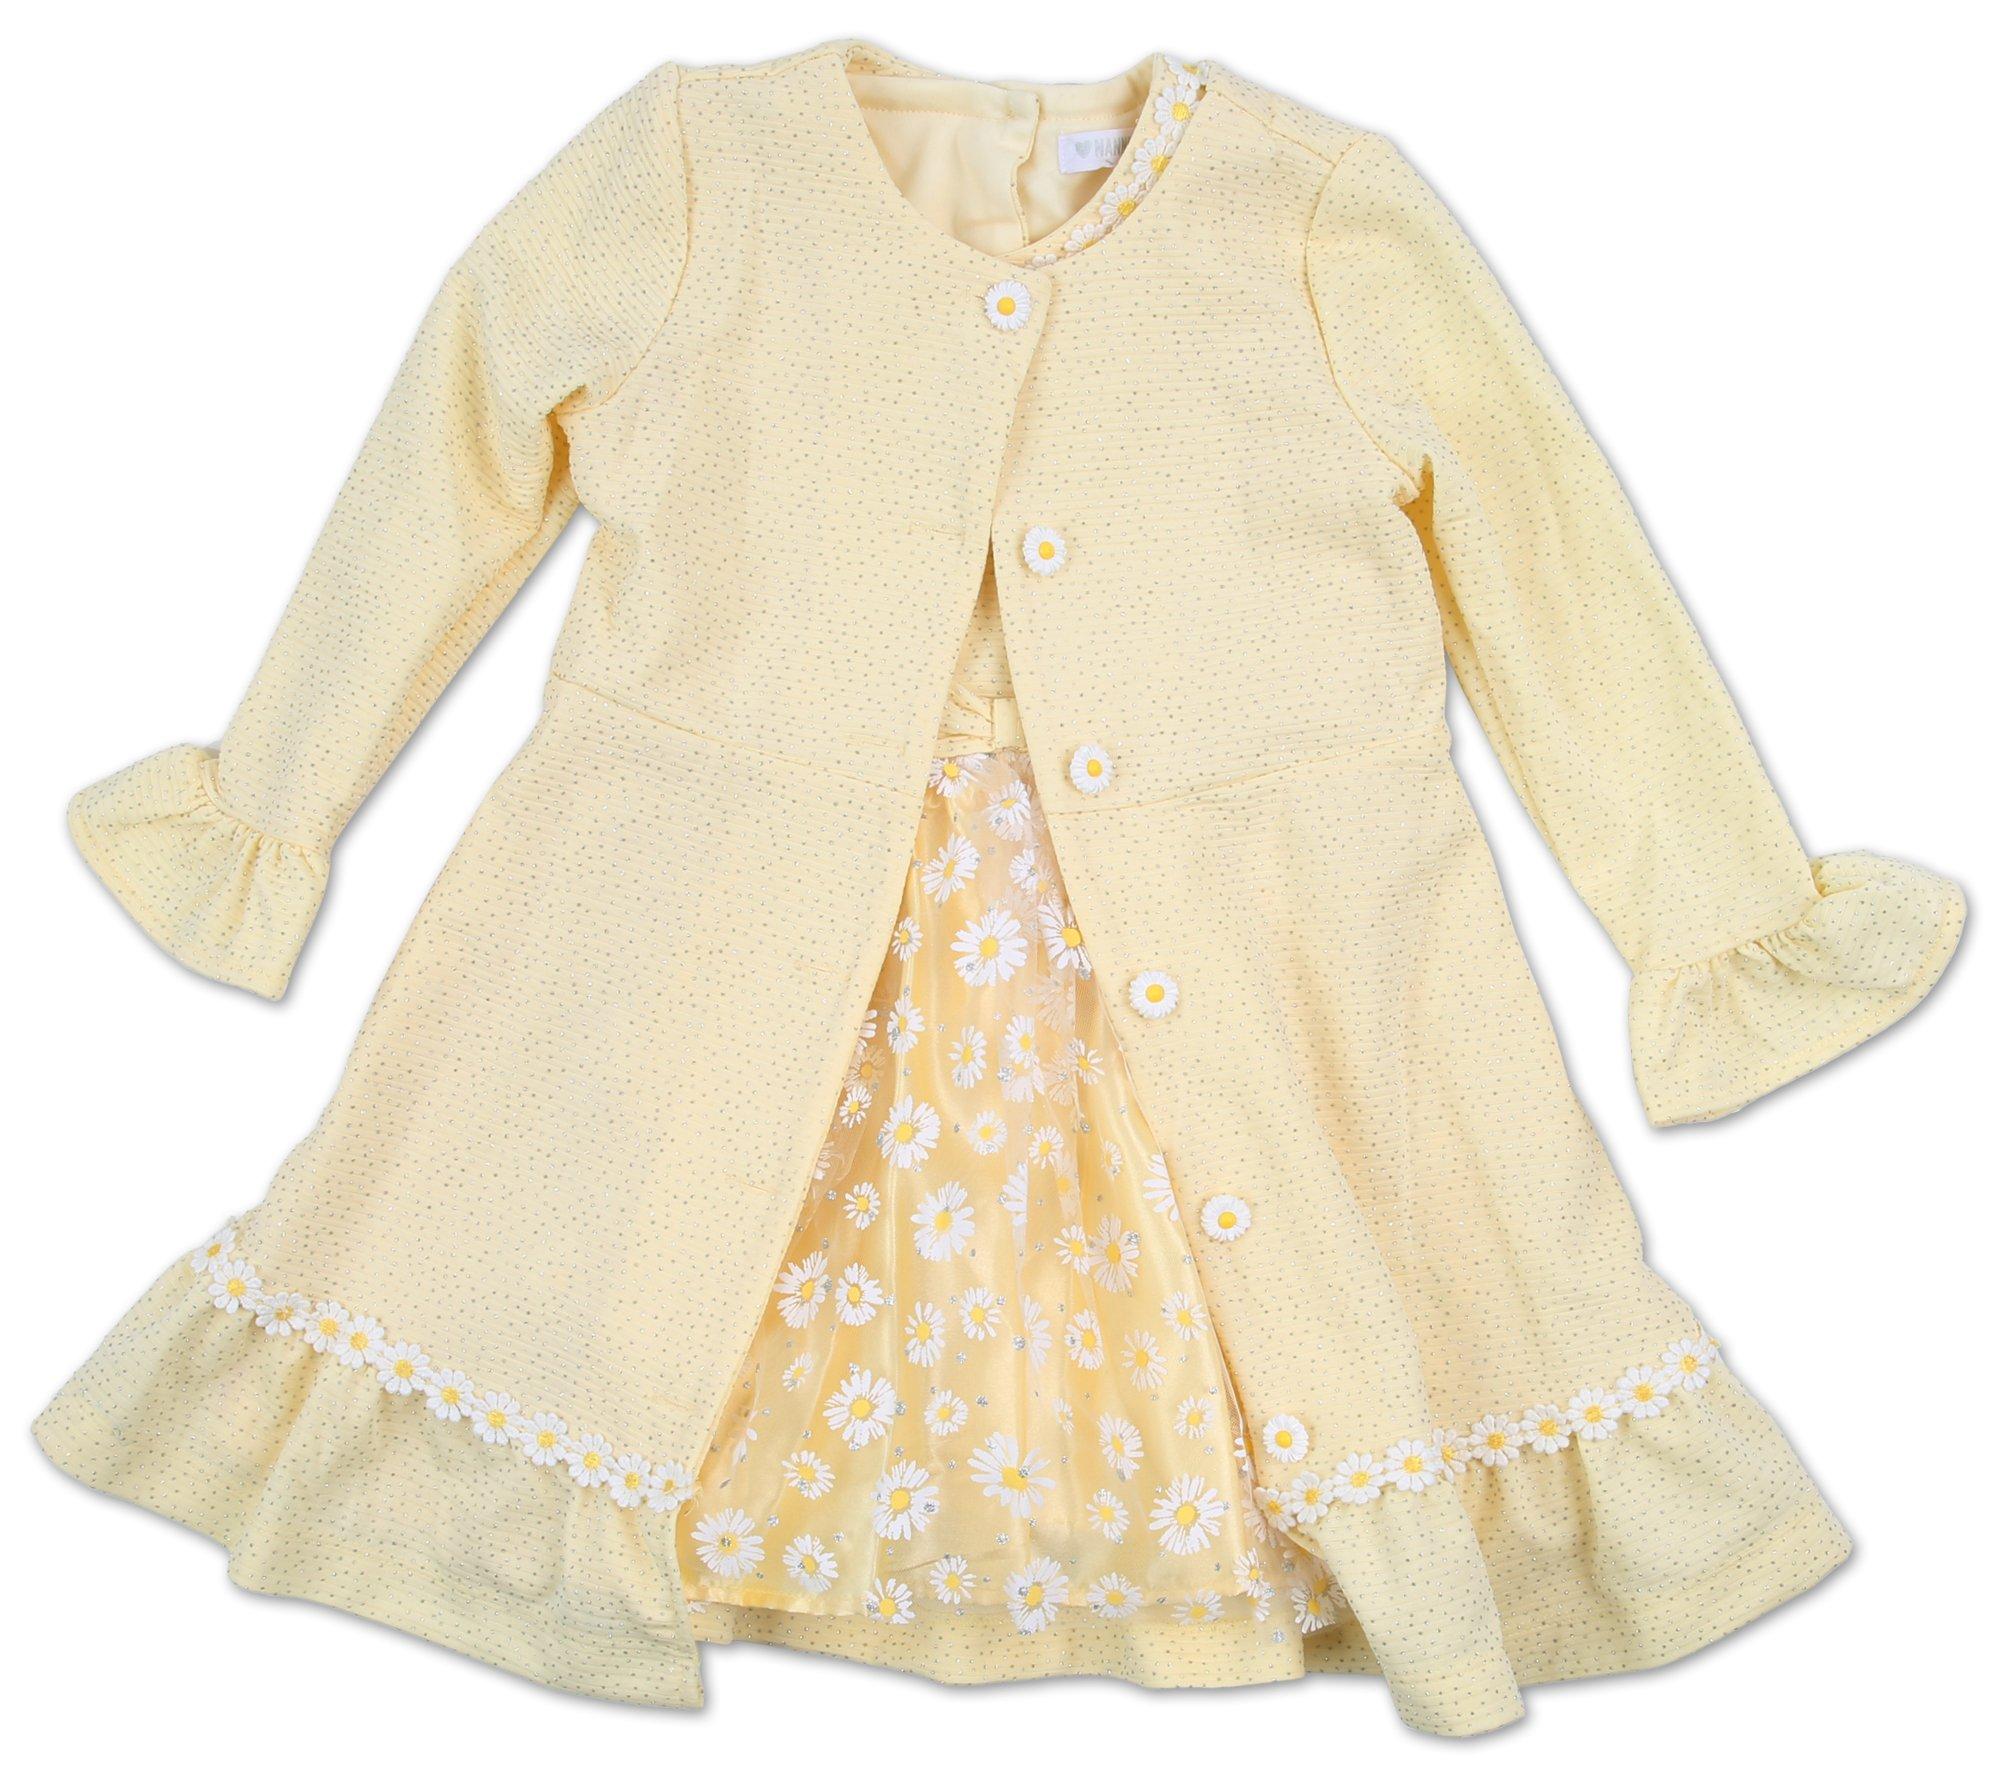 Toddler Girls 2 Pc Coat & Dress Set